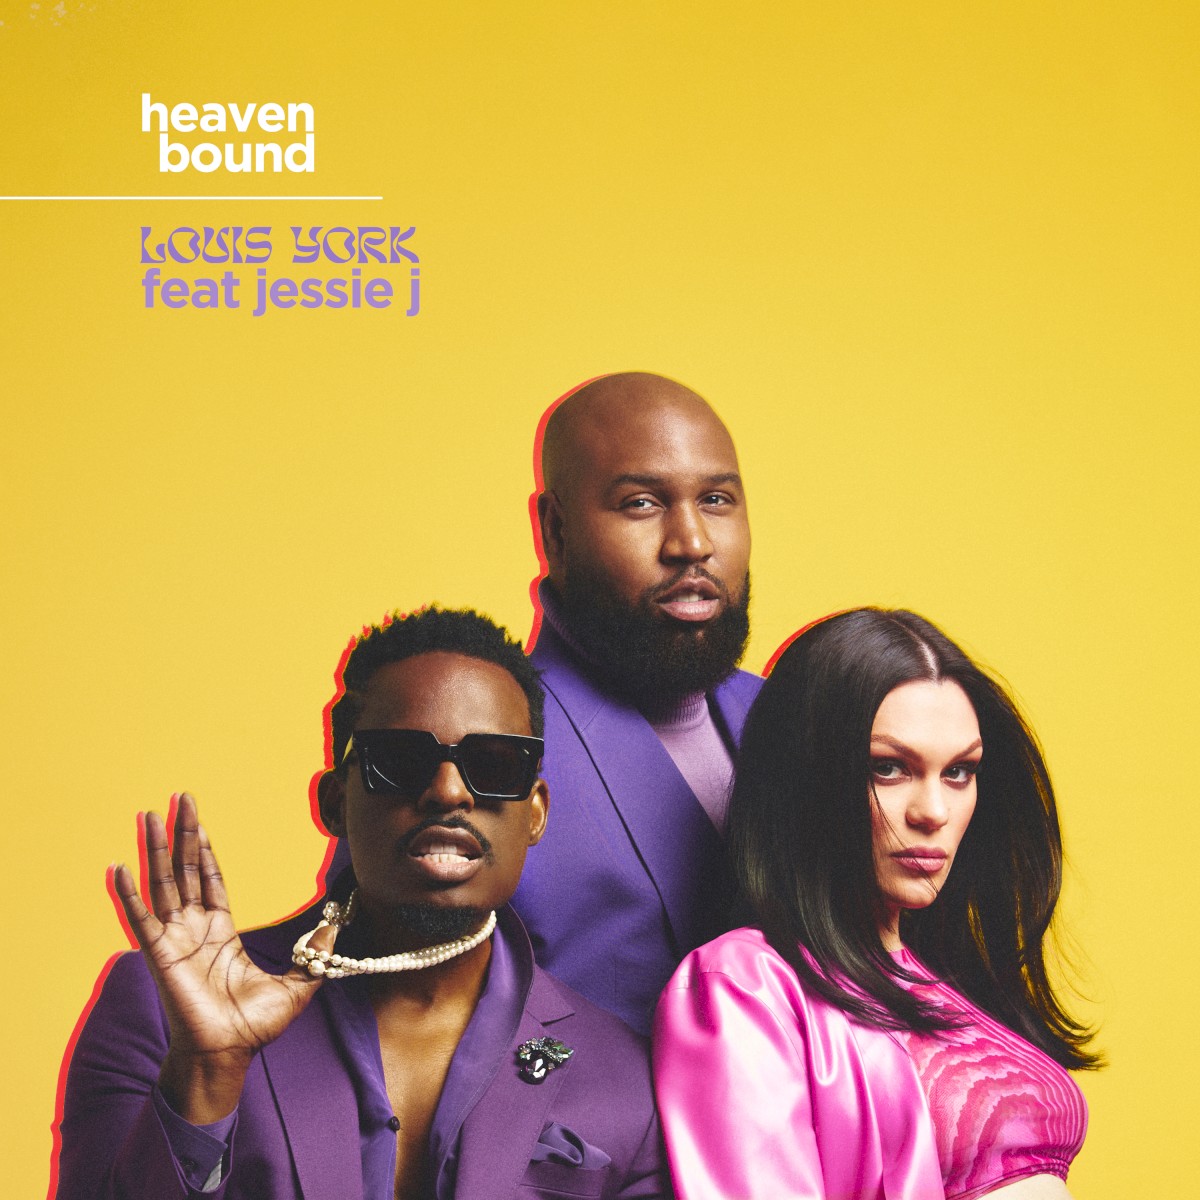 Louis York featuring Jessie J — Heaven Bound cover artwork